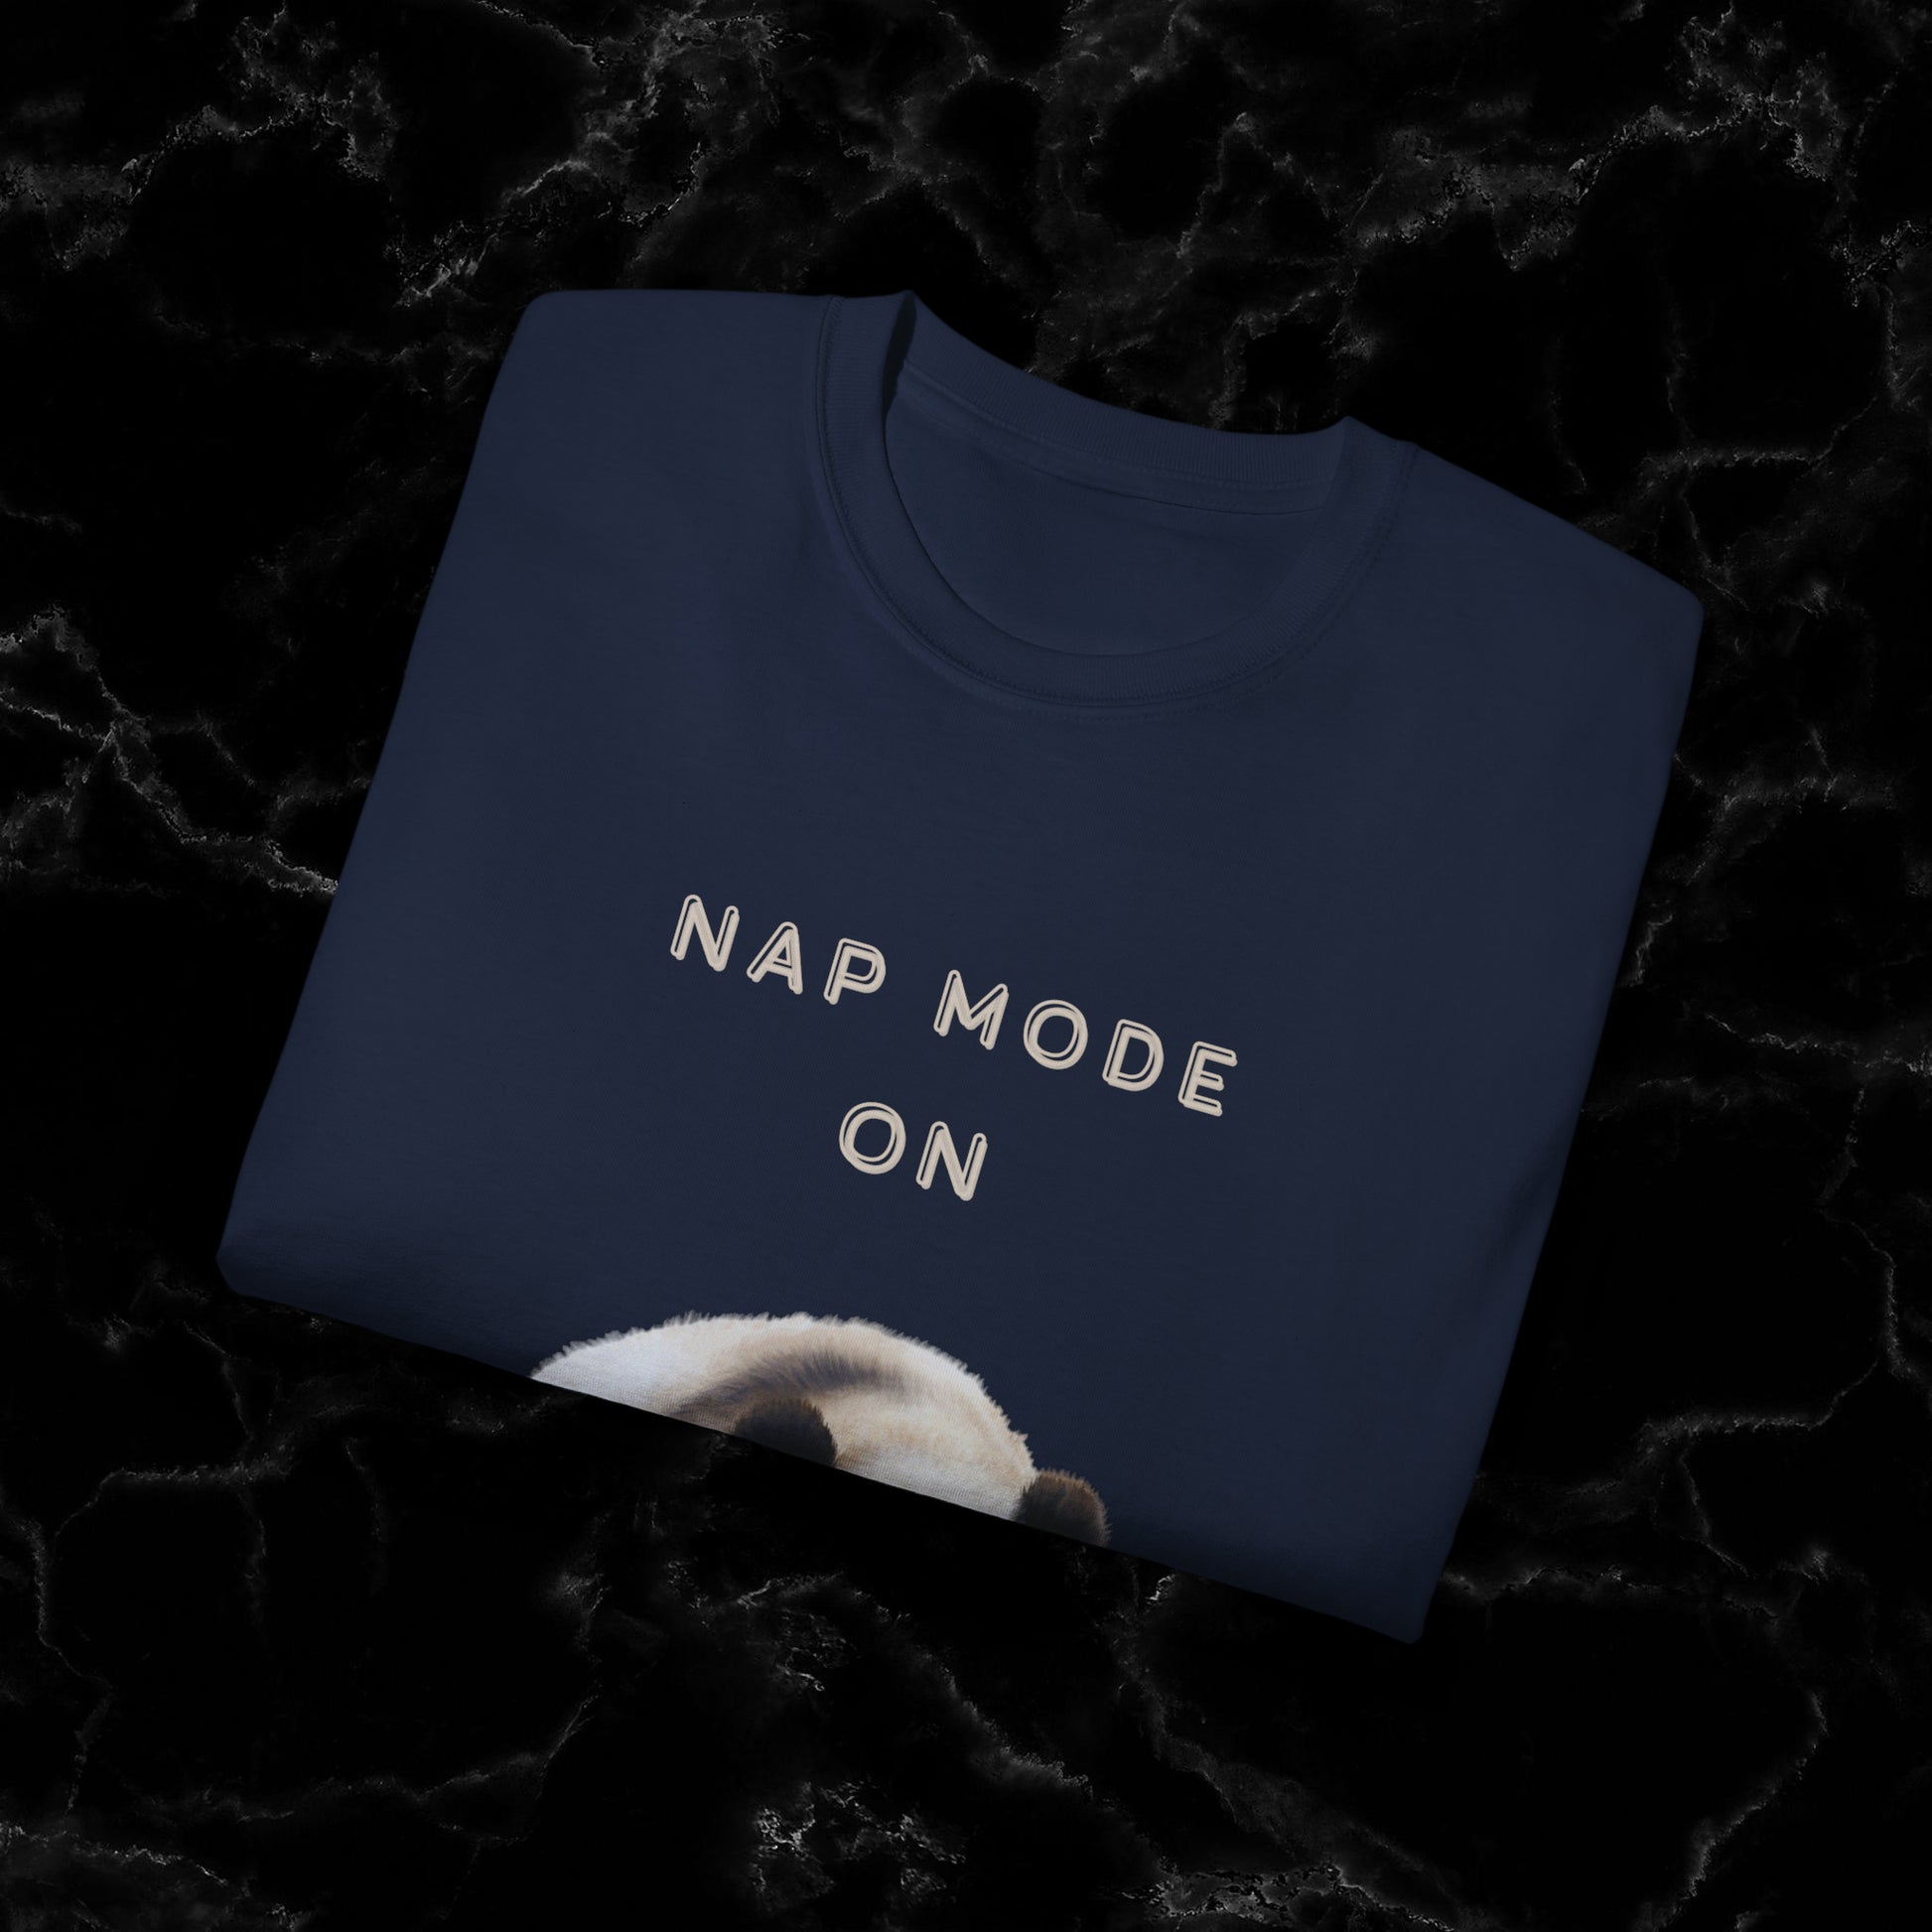 Nap Time Panda Unisex Funny Tee - Hilarious Panda Nap Design T-Shirt   